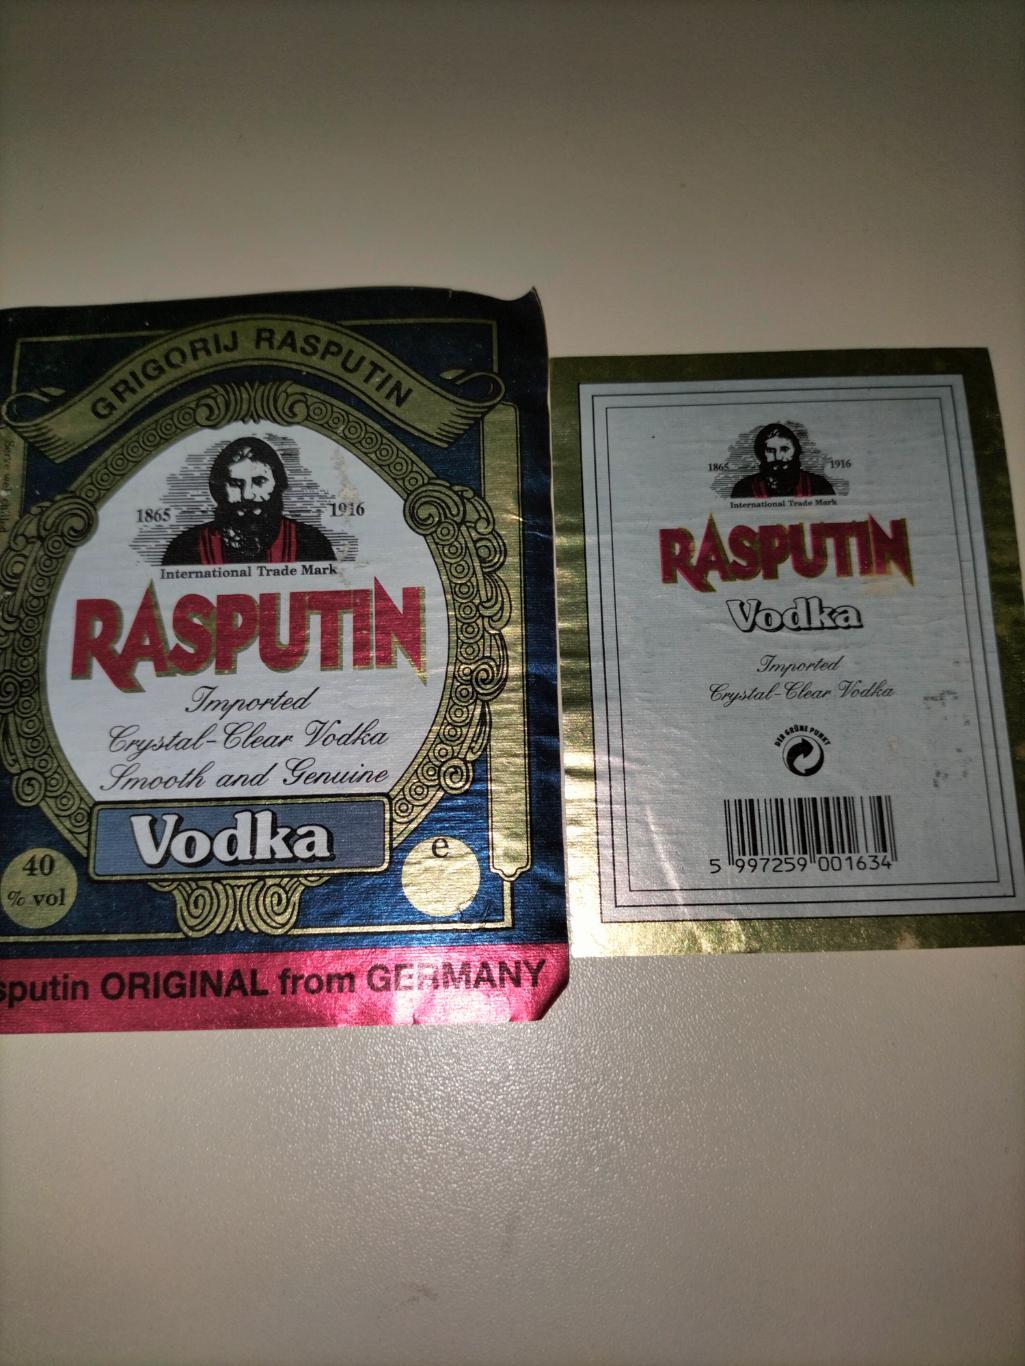 Rasputin Vodka